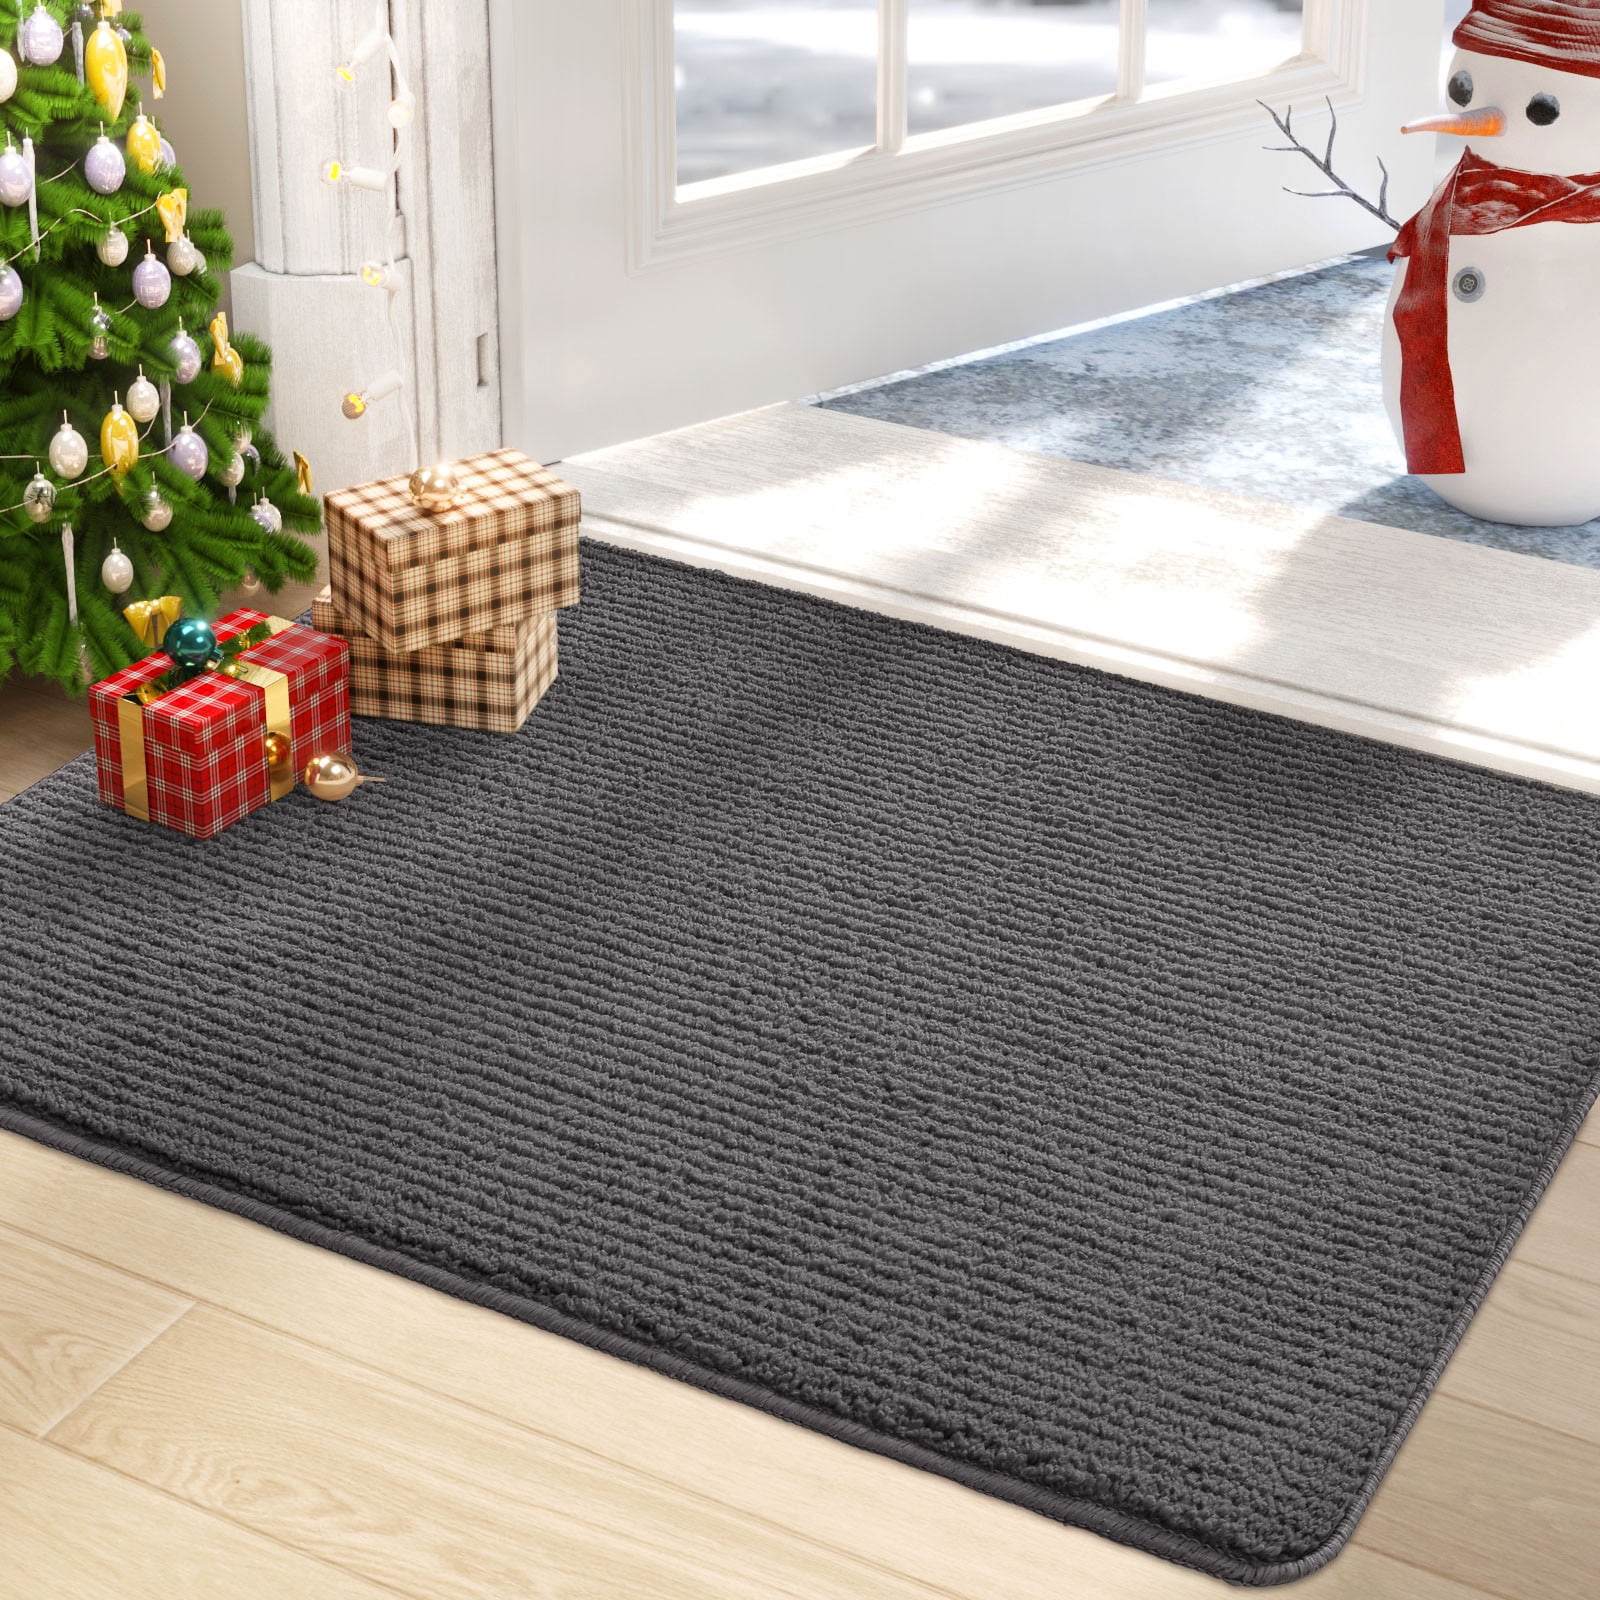 Villsure Door mat Indoor, Front Doormats, Non-Slip Entryway Rug